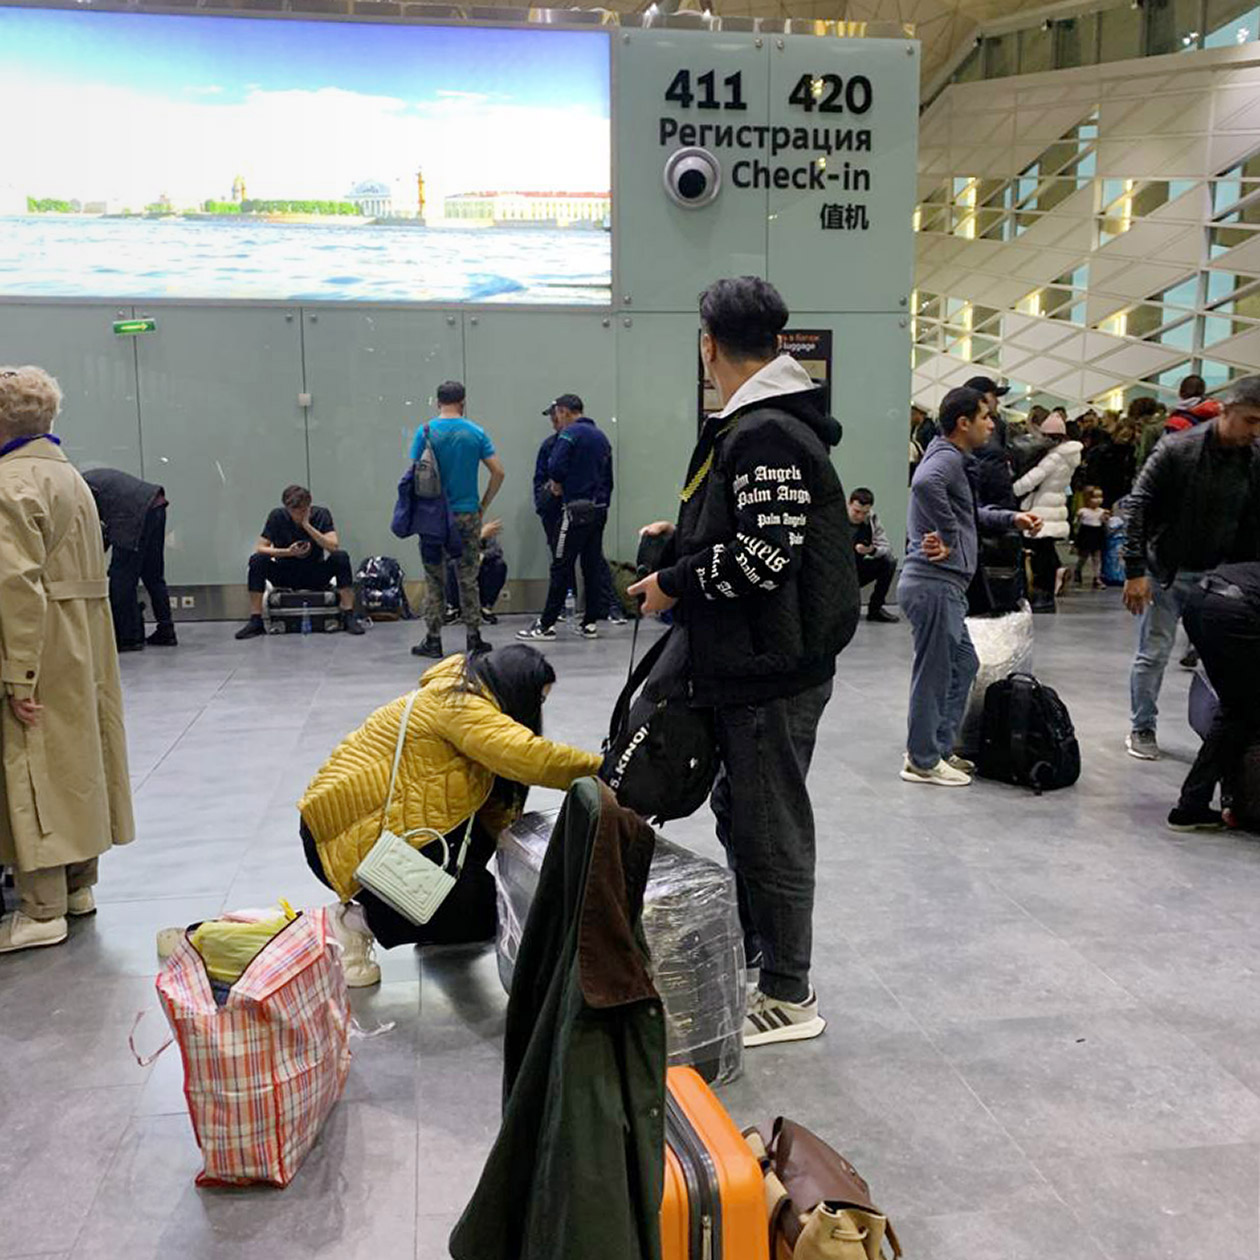 Лена посоветовала замотать чемодан в пленку: в ташкентском аэропорту не особо бережно обращаются с вещами